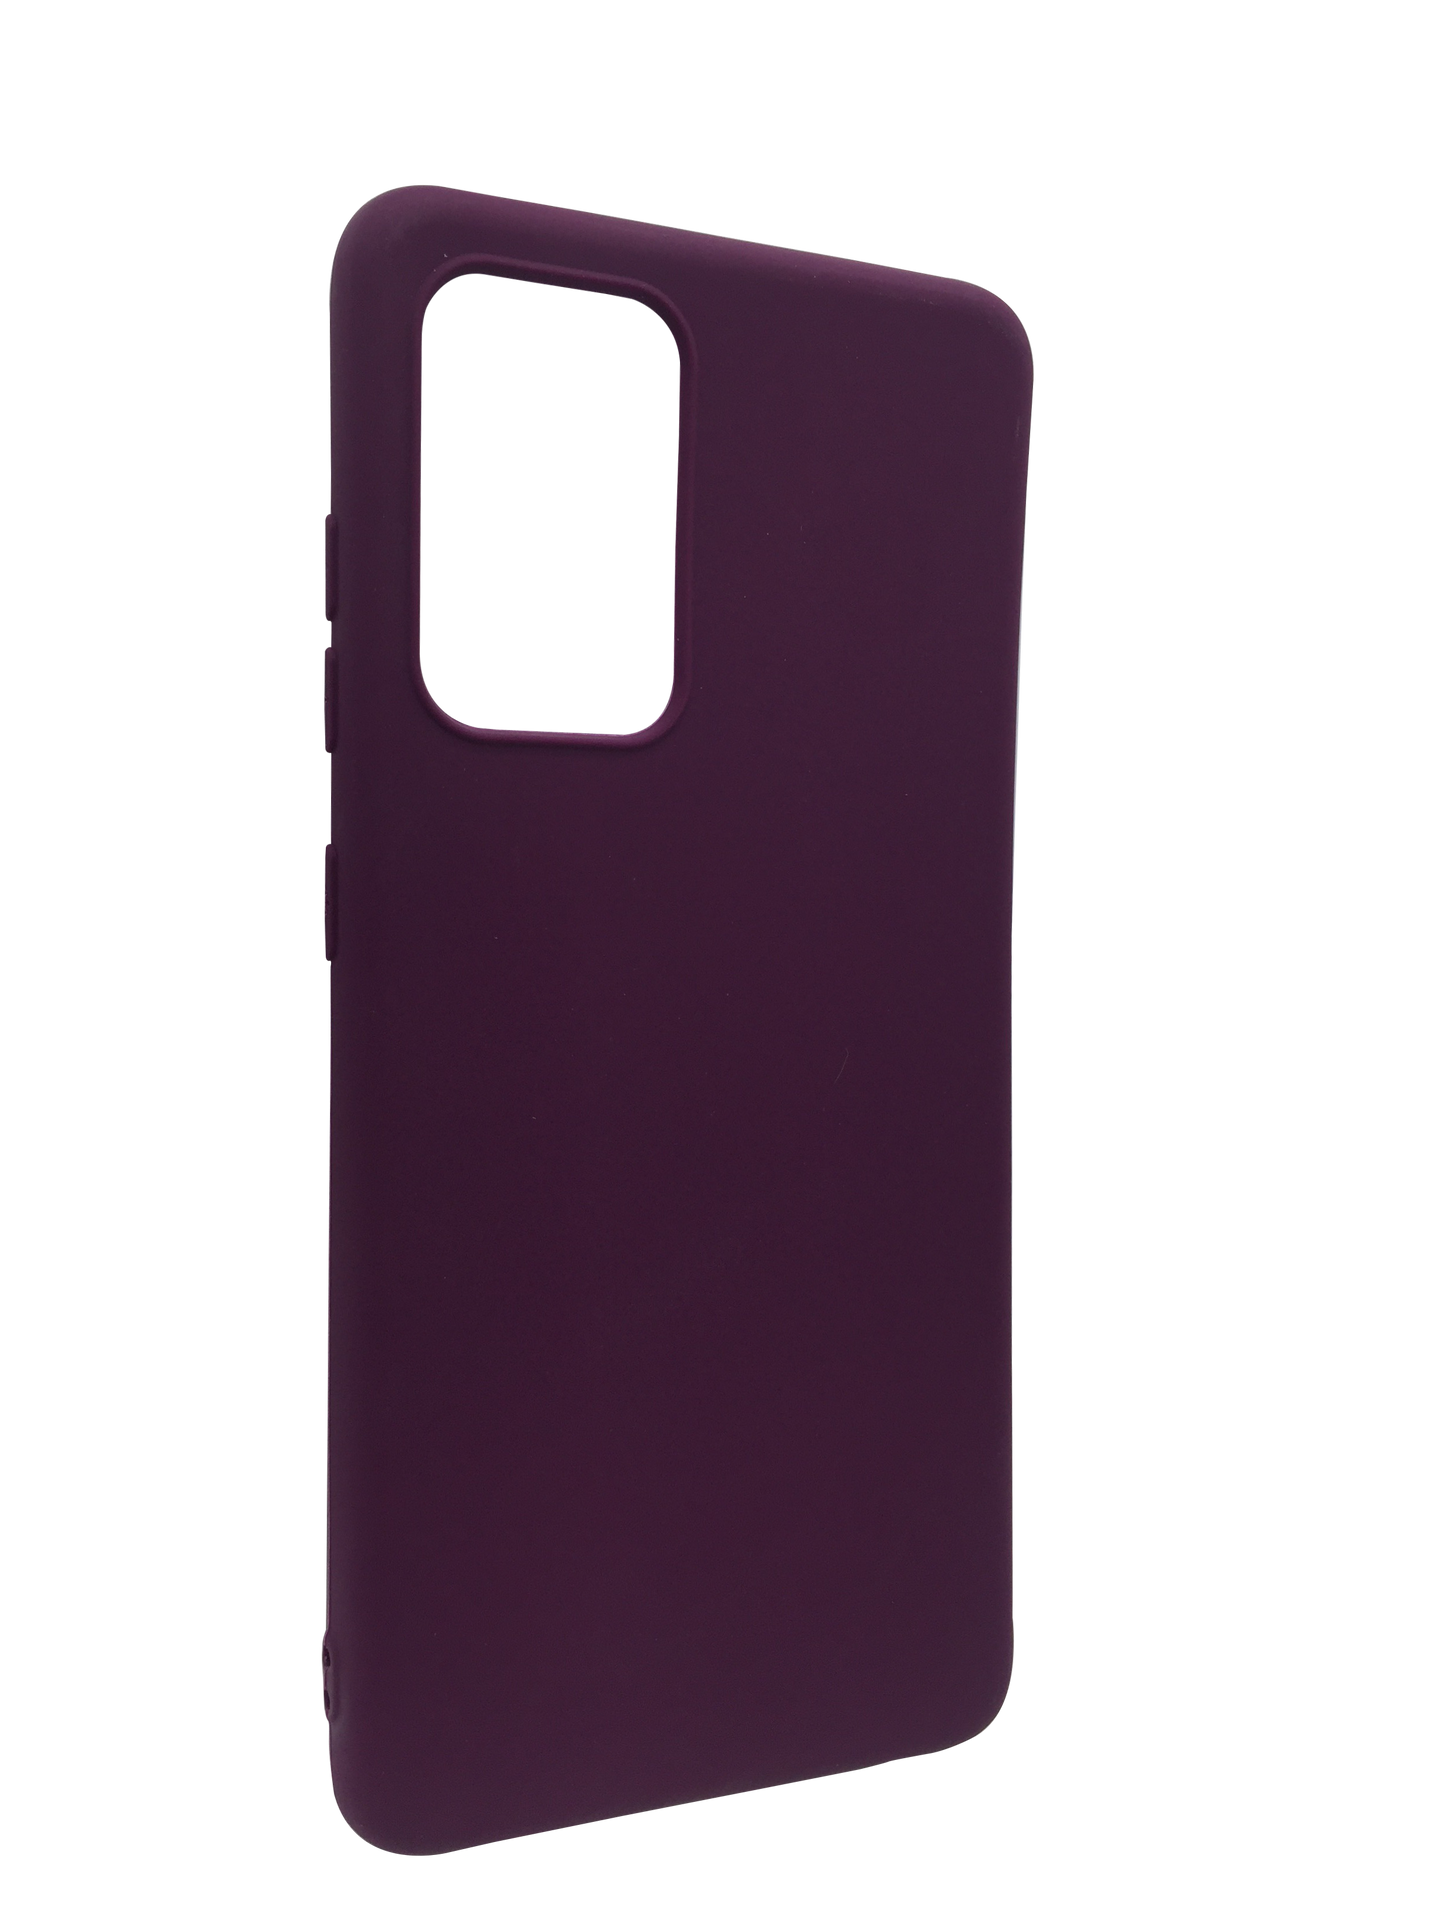 Silicone case Samsung A52 PURPLE